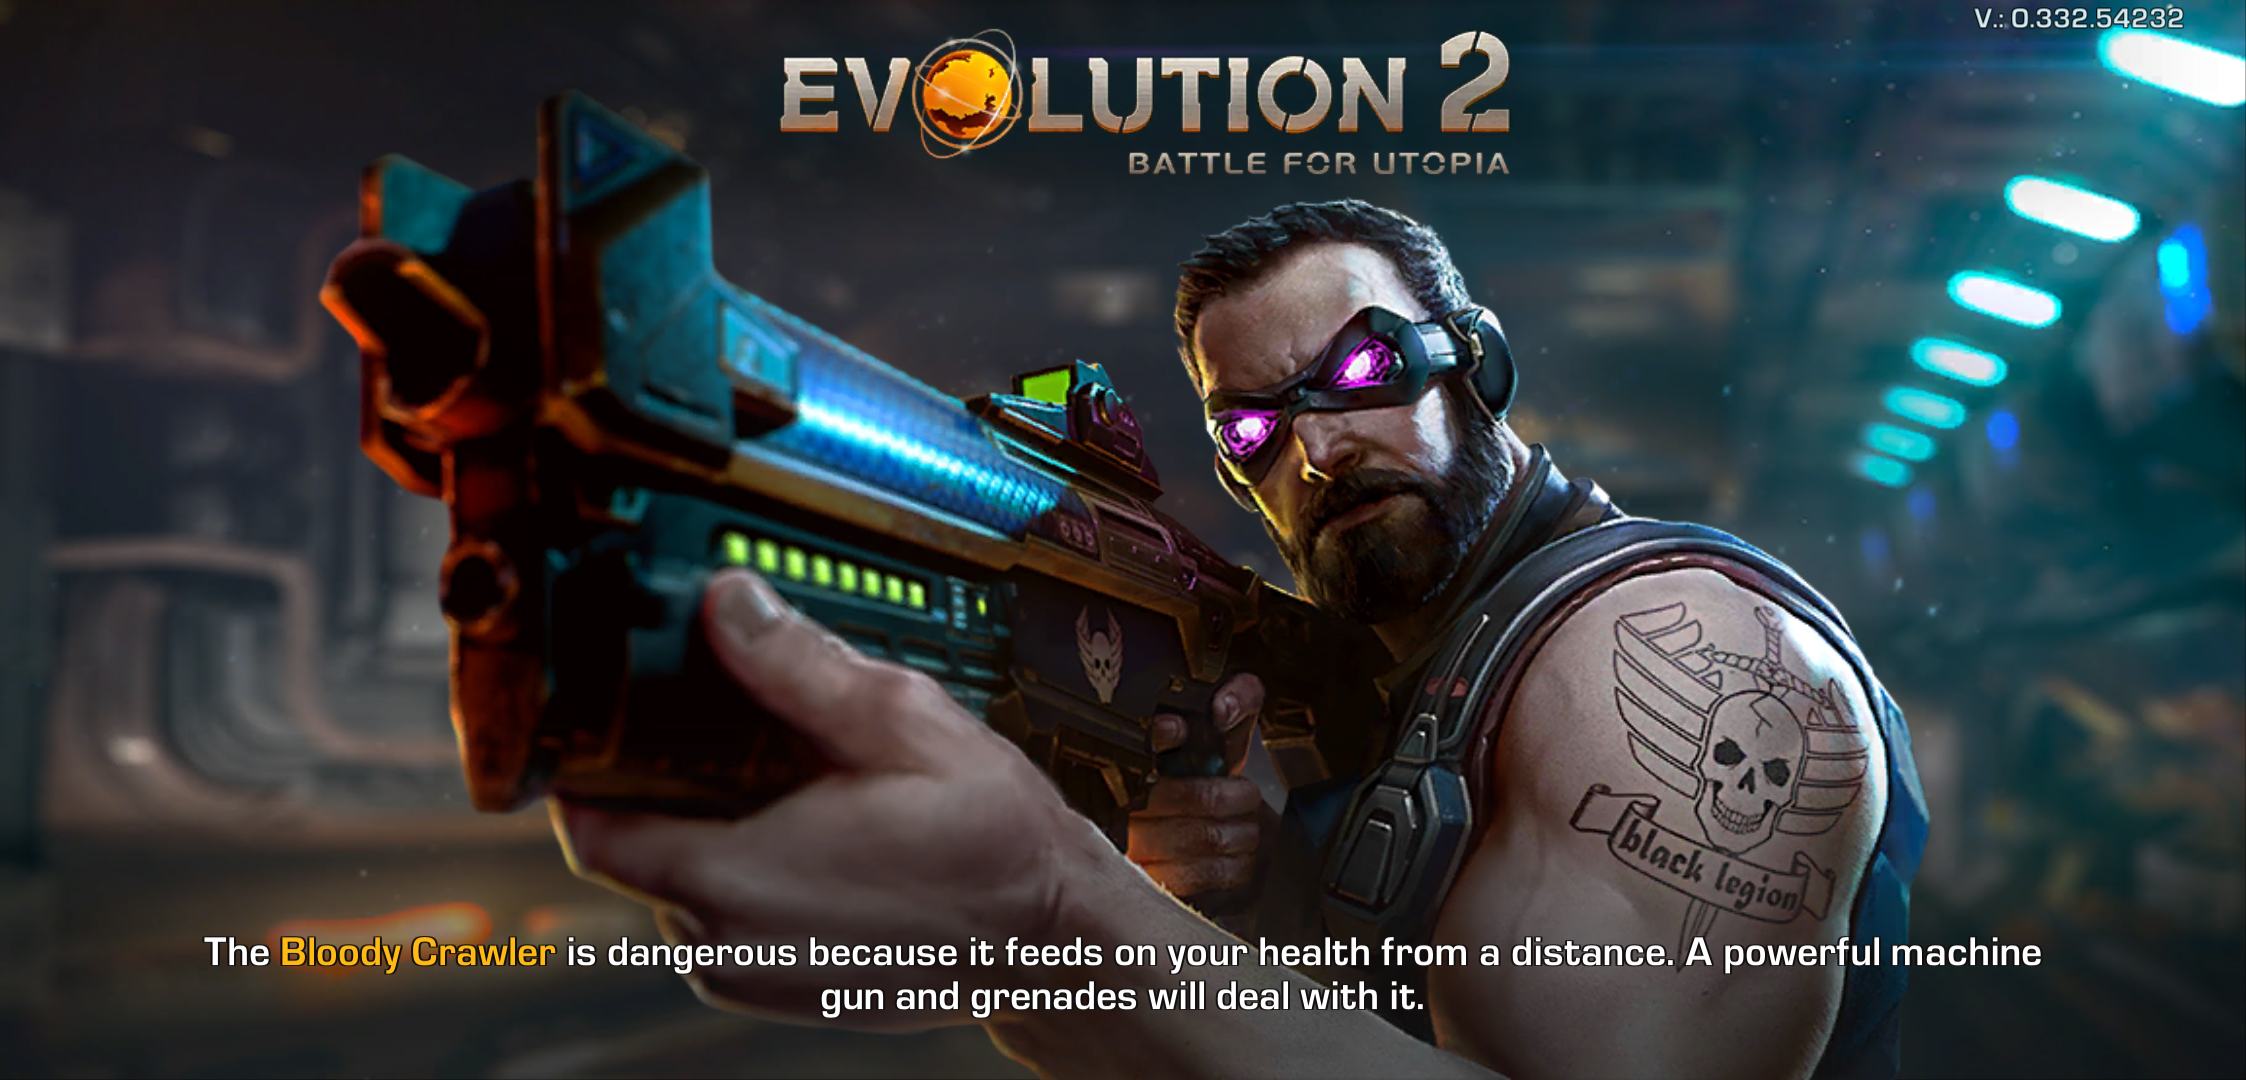 Evolution 2: Battle for Utopia - Game bắn súng góc nhìn thứ 3, đồ họa 3D sắc nét